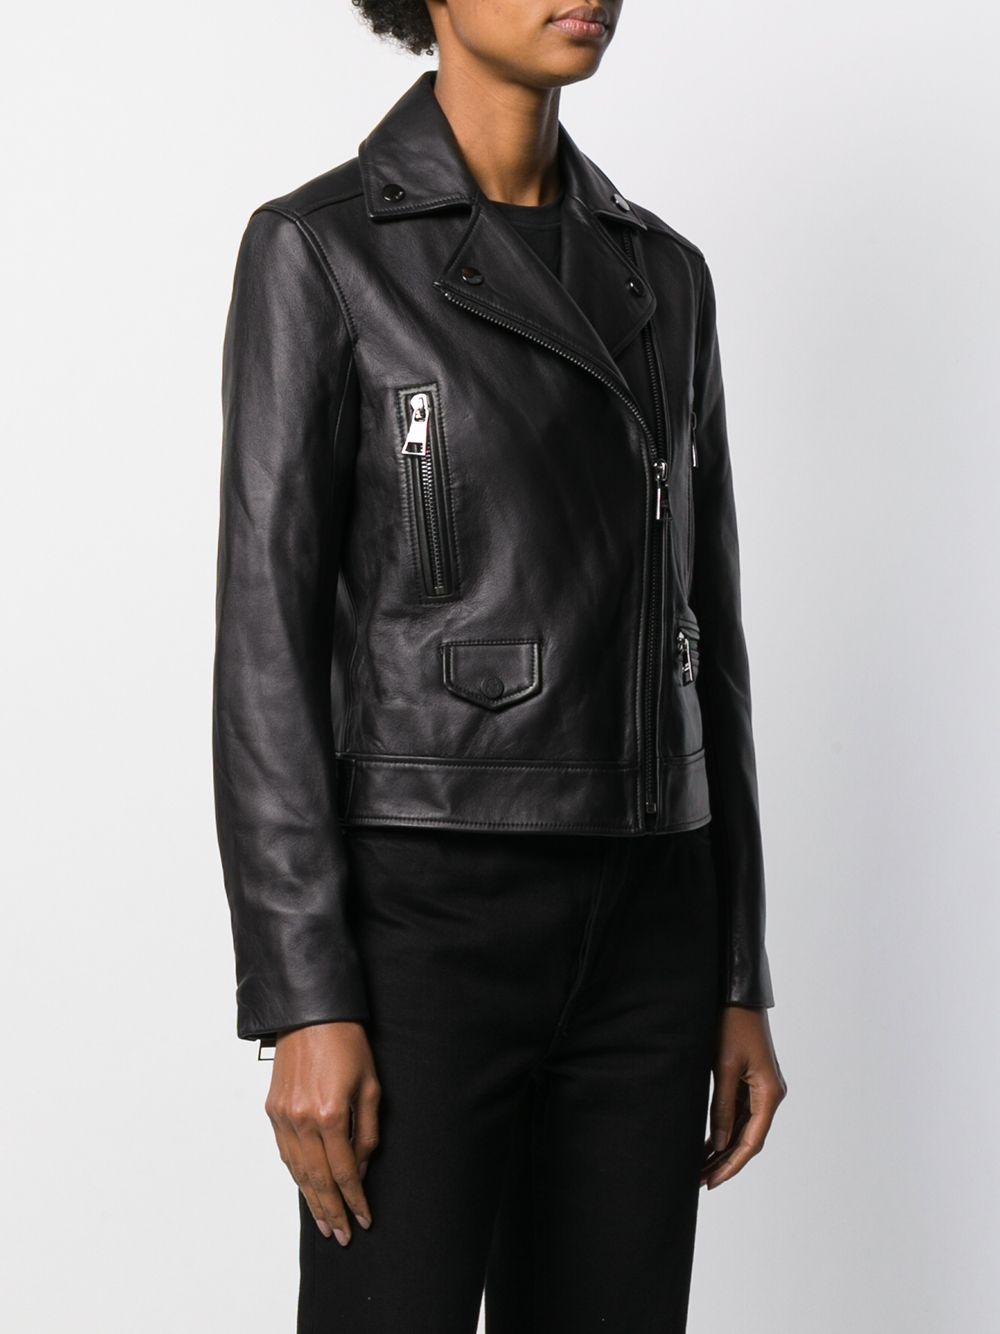 Karl Lagerfeld Ikonik Leather Biker Jacket in Black - Lyst